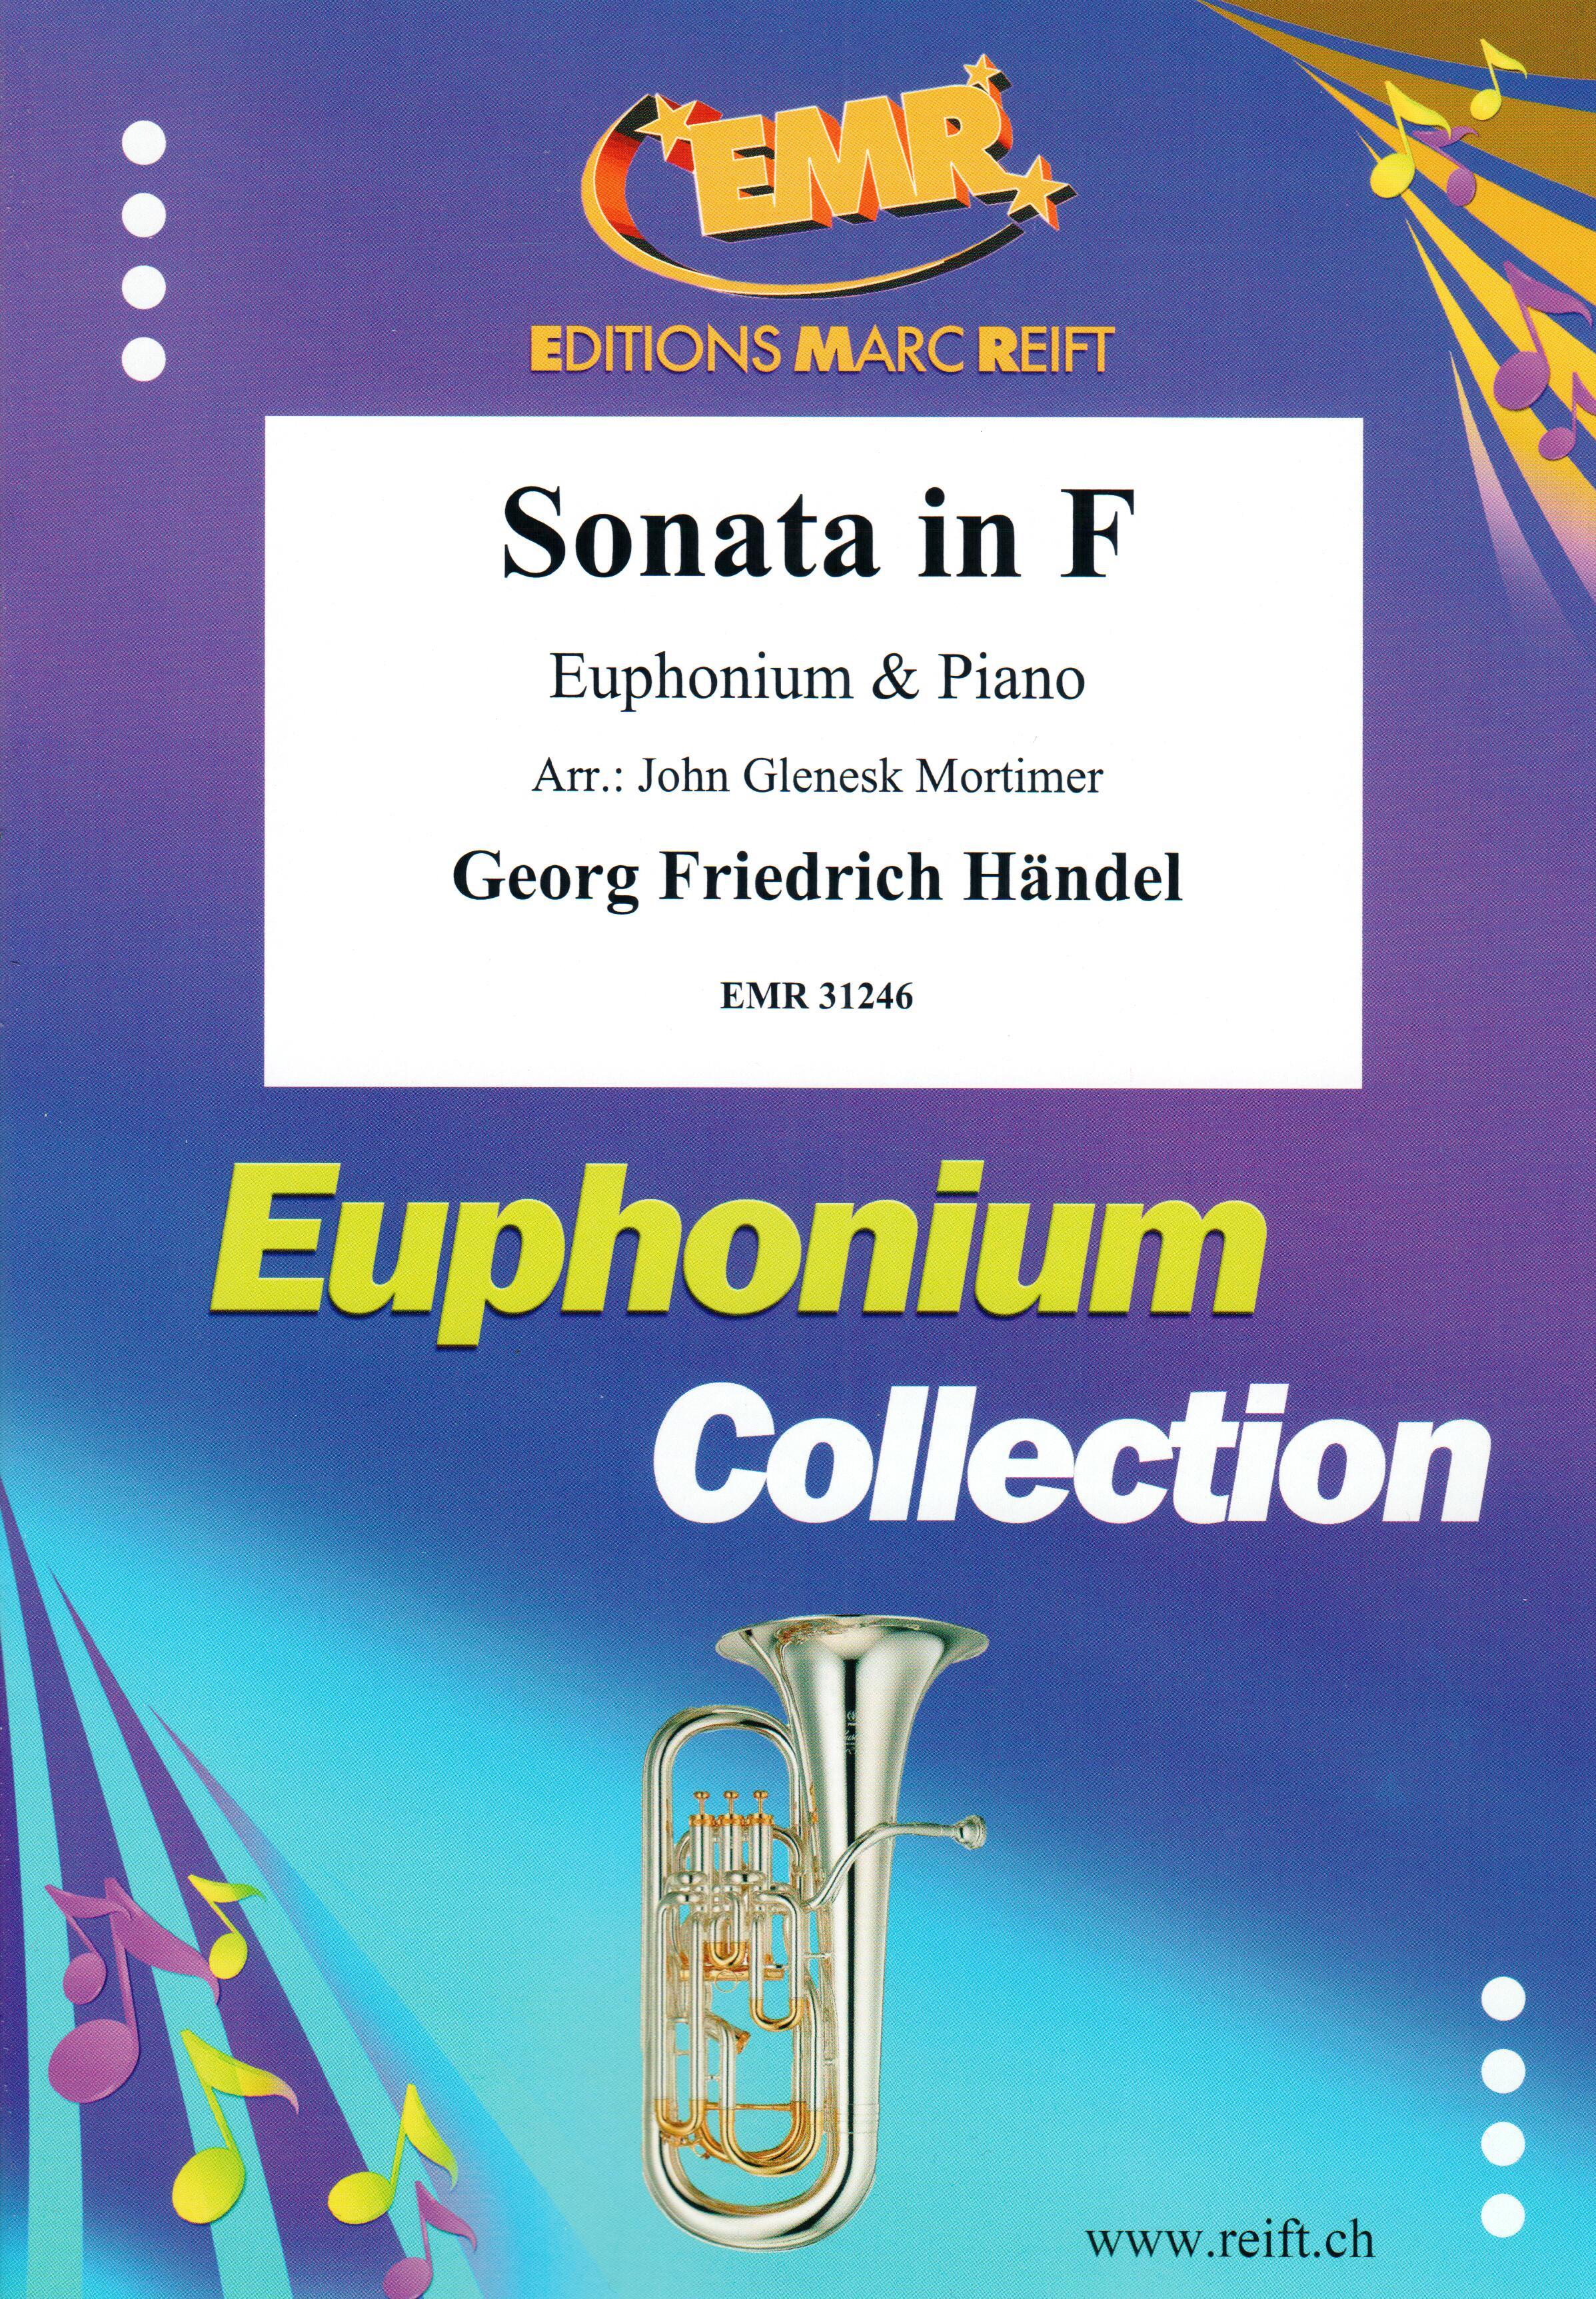 SONATA IN F, SOLOS - Euphonium